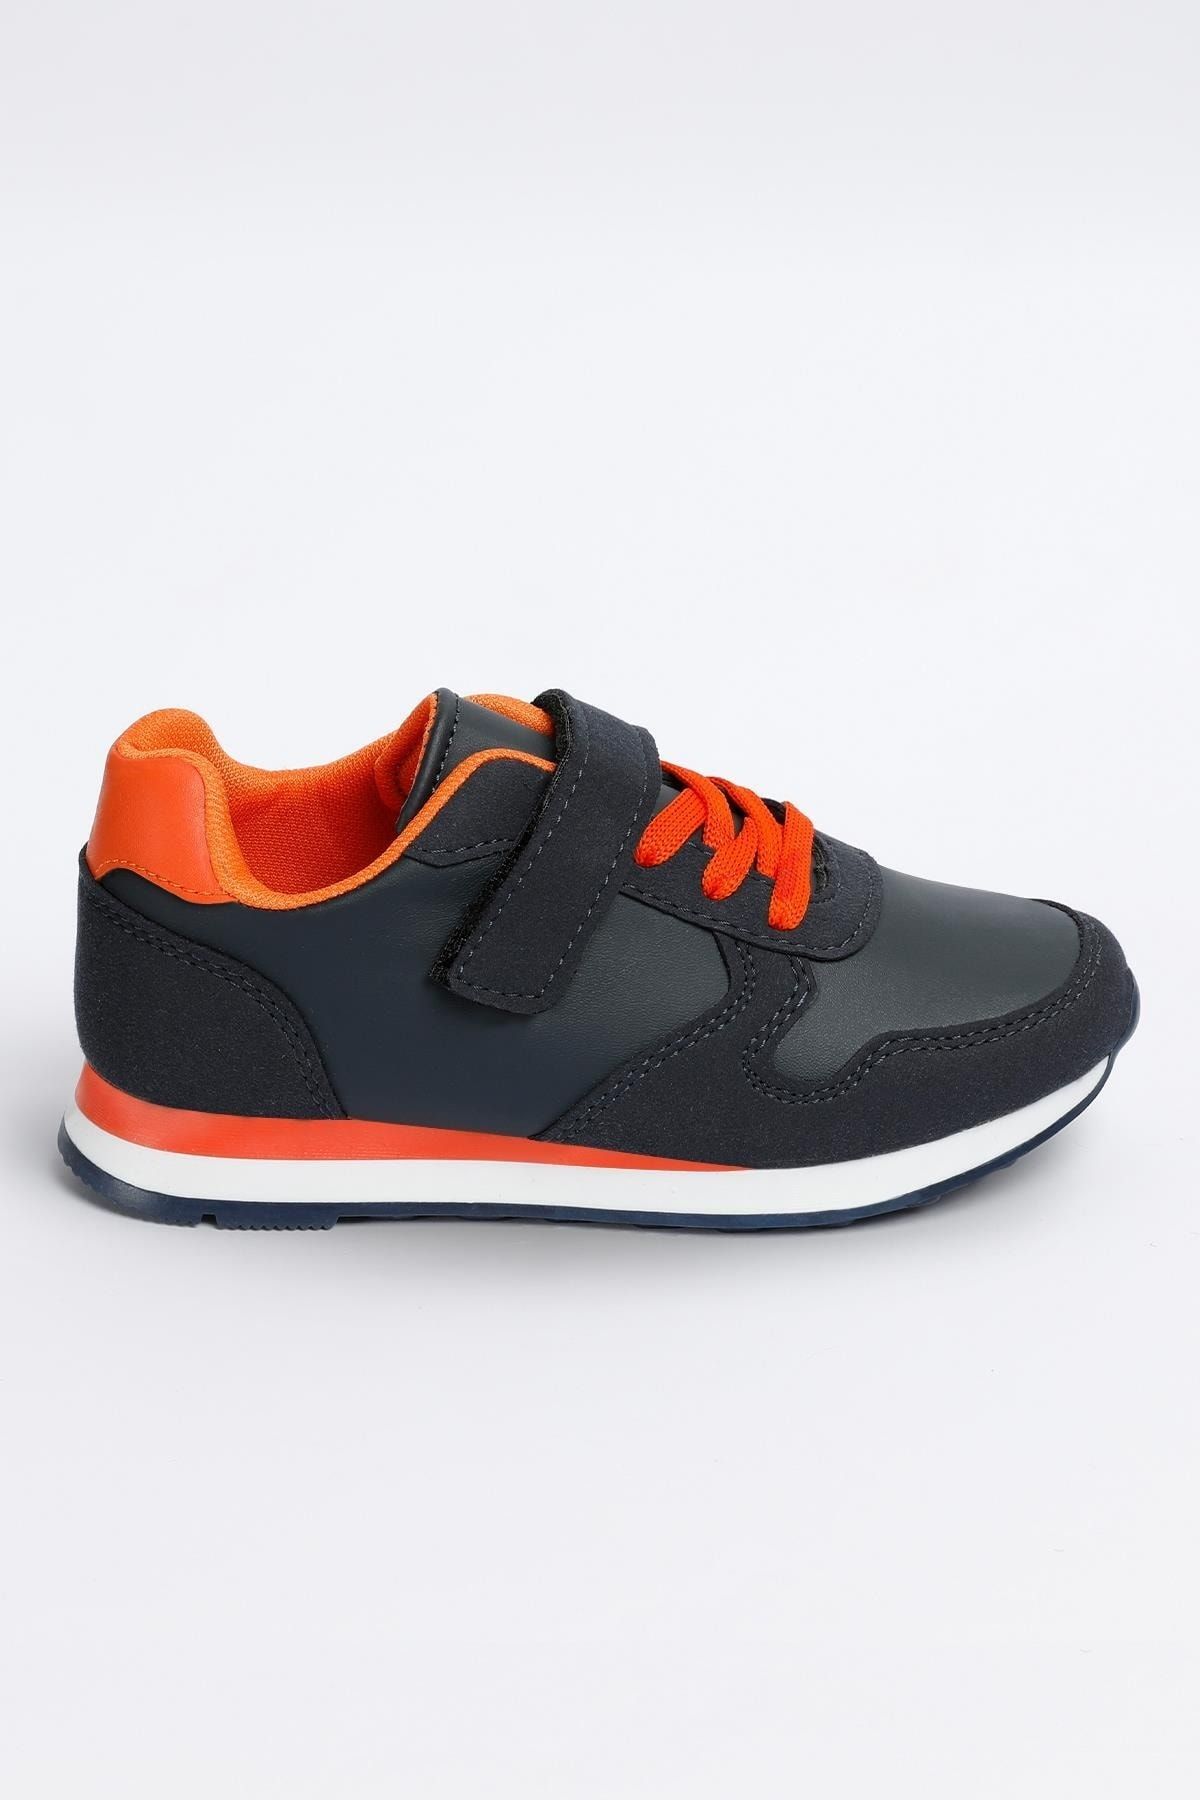 Walky - Vega Model Lacivert - Orange Unisex Çocuk Spor Sneaker Ayakkabı